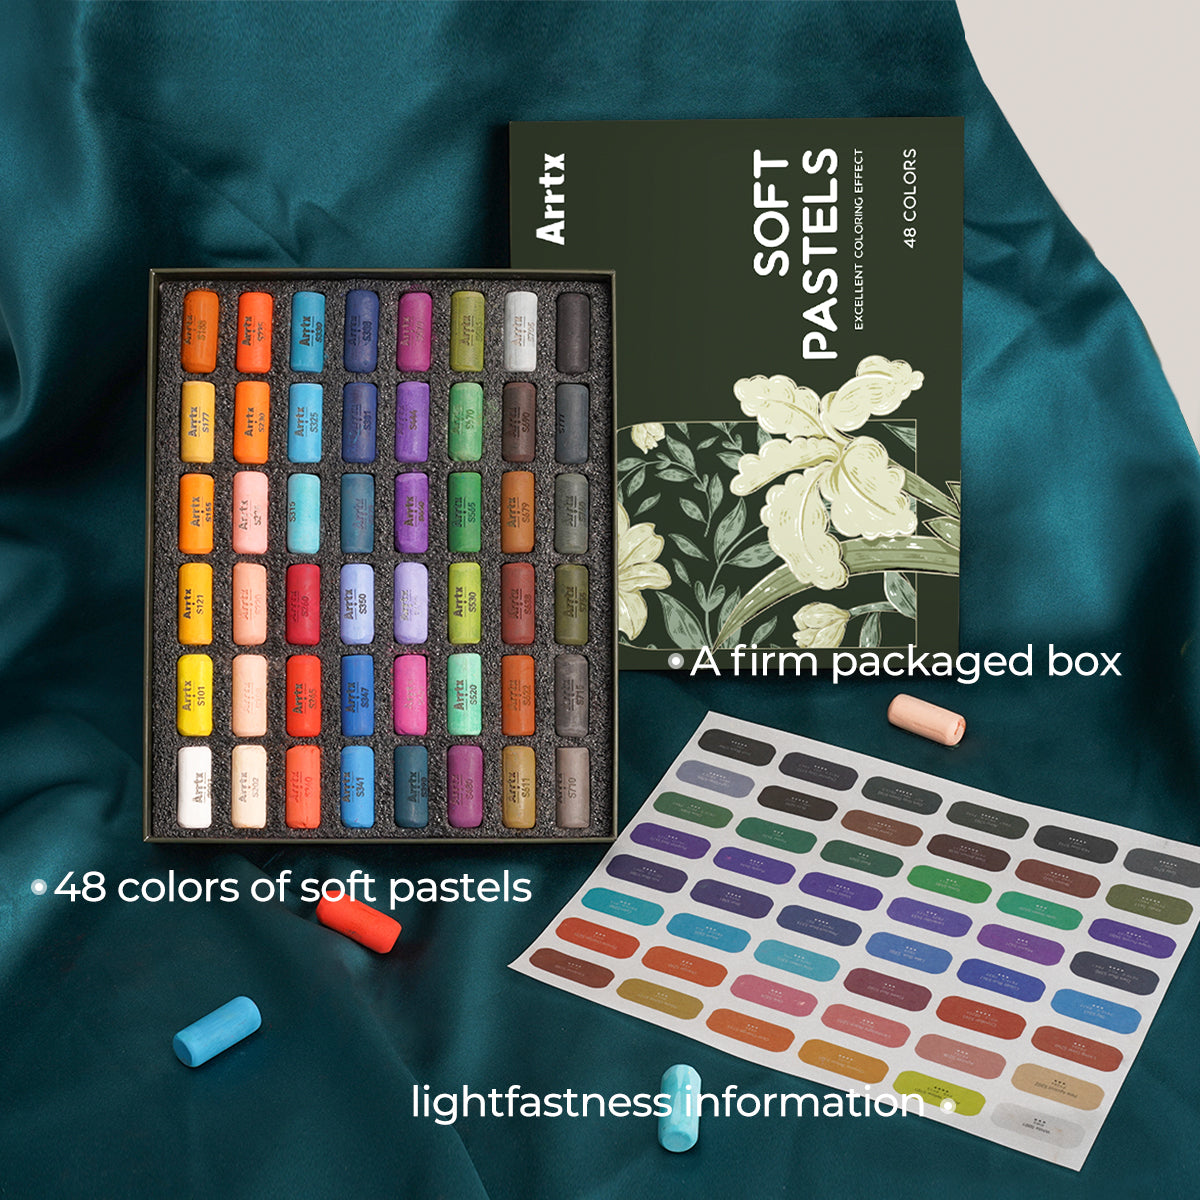 Arrtx 48 Farben Weiche Pastelle Set Pastellzeichnung